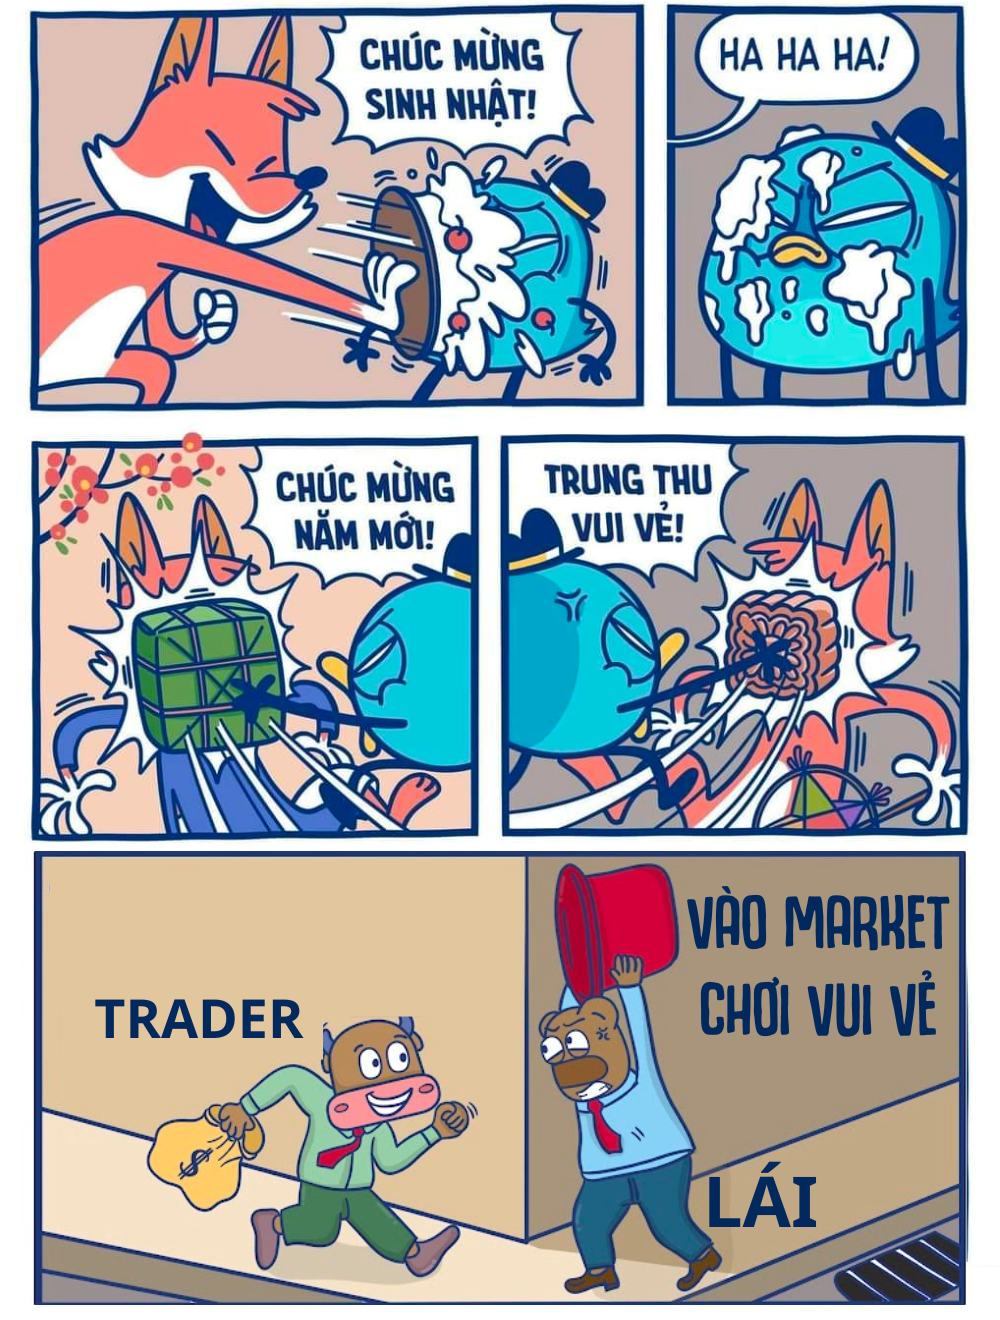 (Vui vẻ) Không sợ Market!